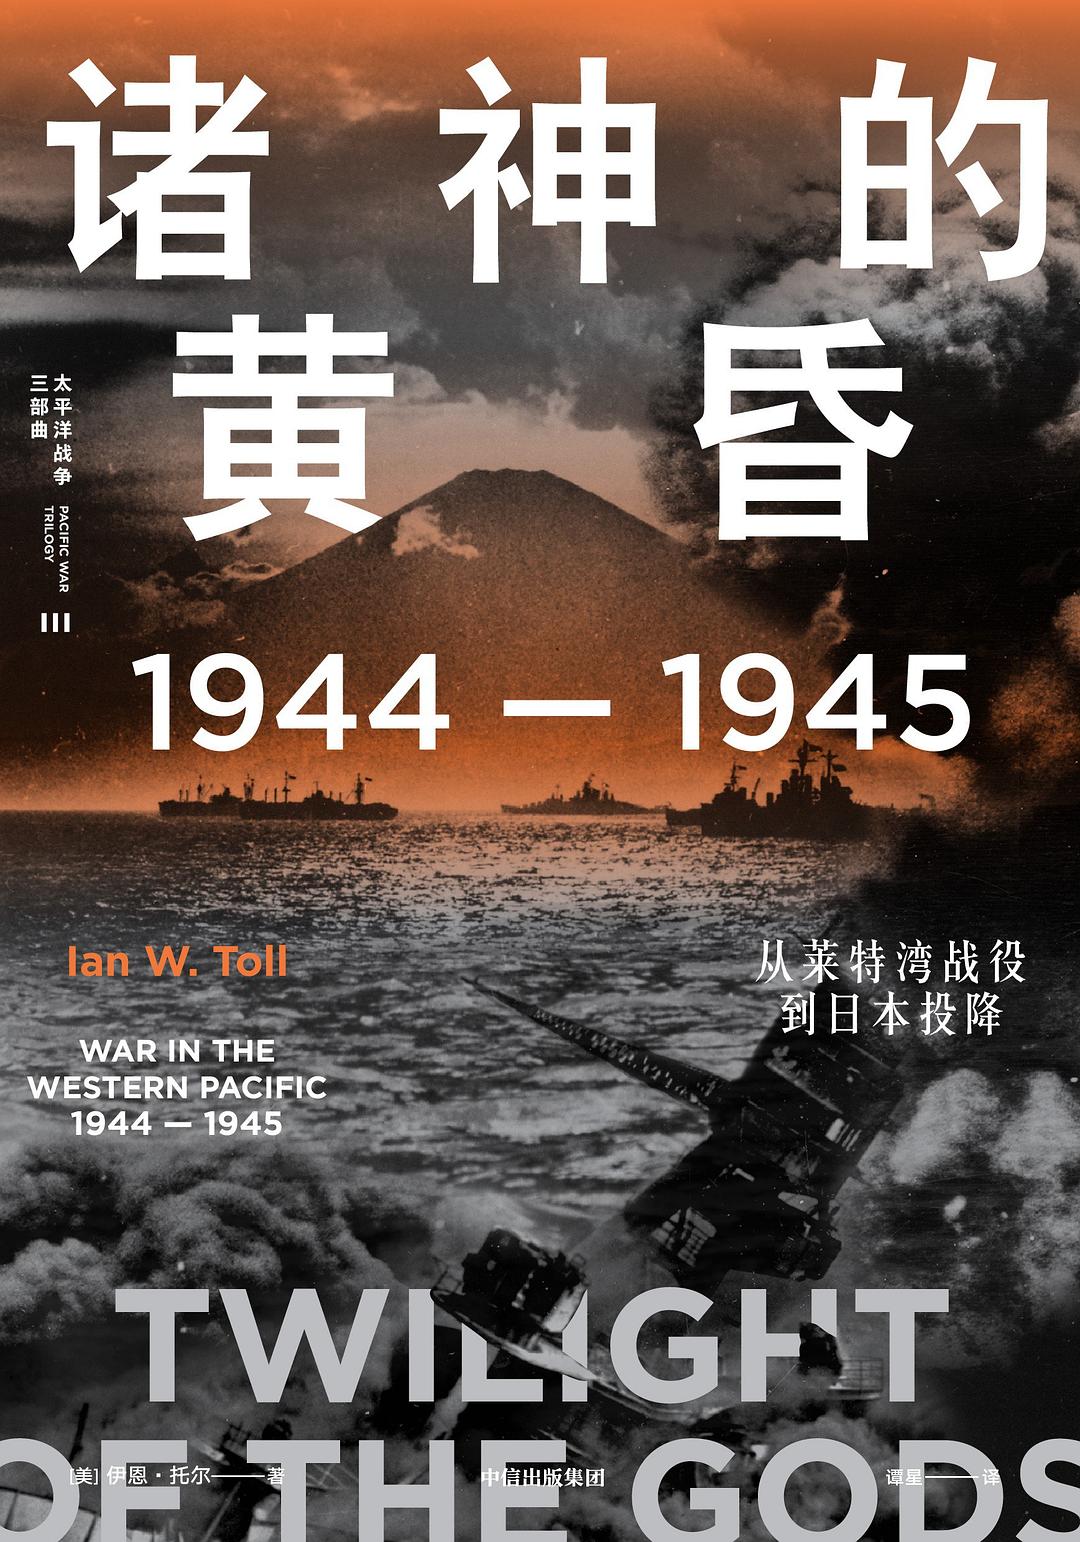 诸神的黄昏 : 1944—1945，从莱特湾战役到日本投降